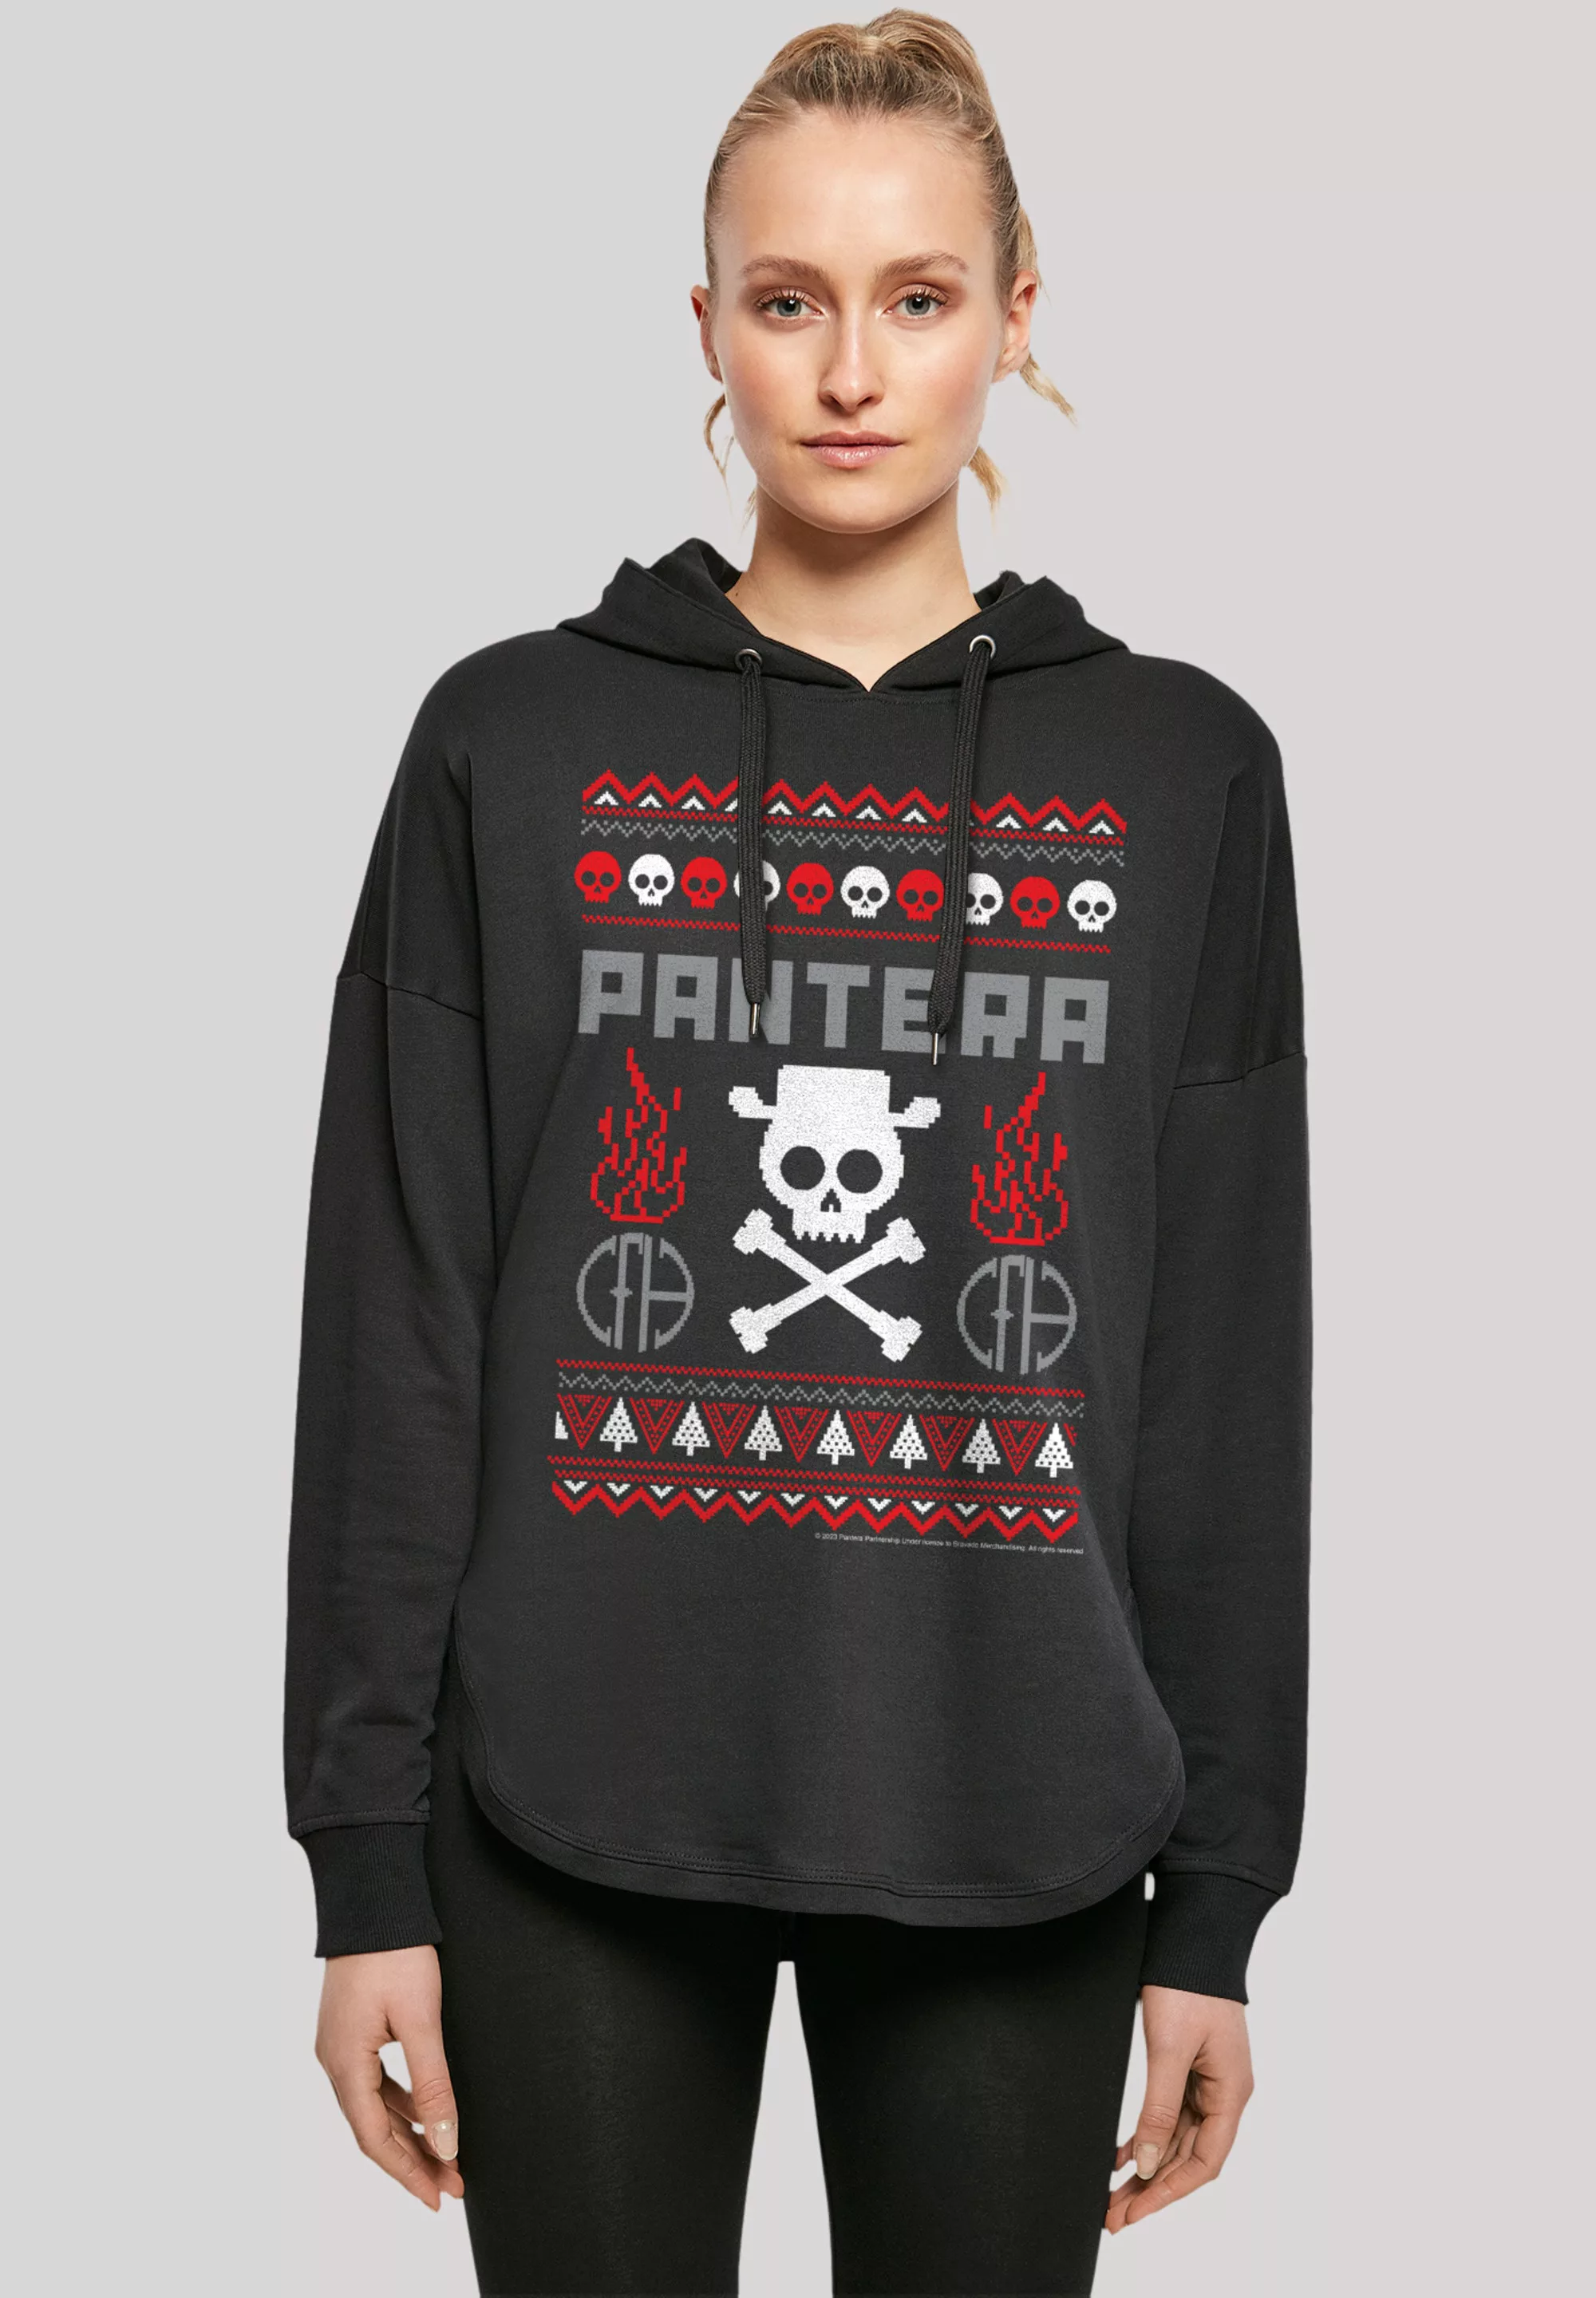 F4NT4STIC Sweatshirt "Pantera Weihnachten Christmas", Musik, Band, Logo günstig online kaufen